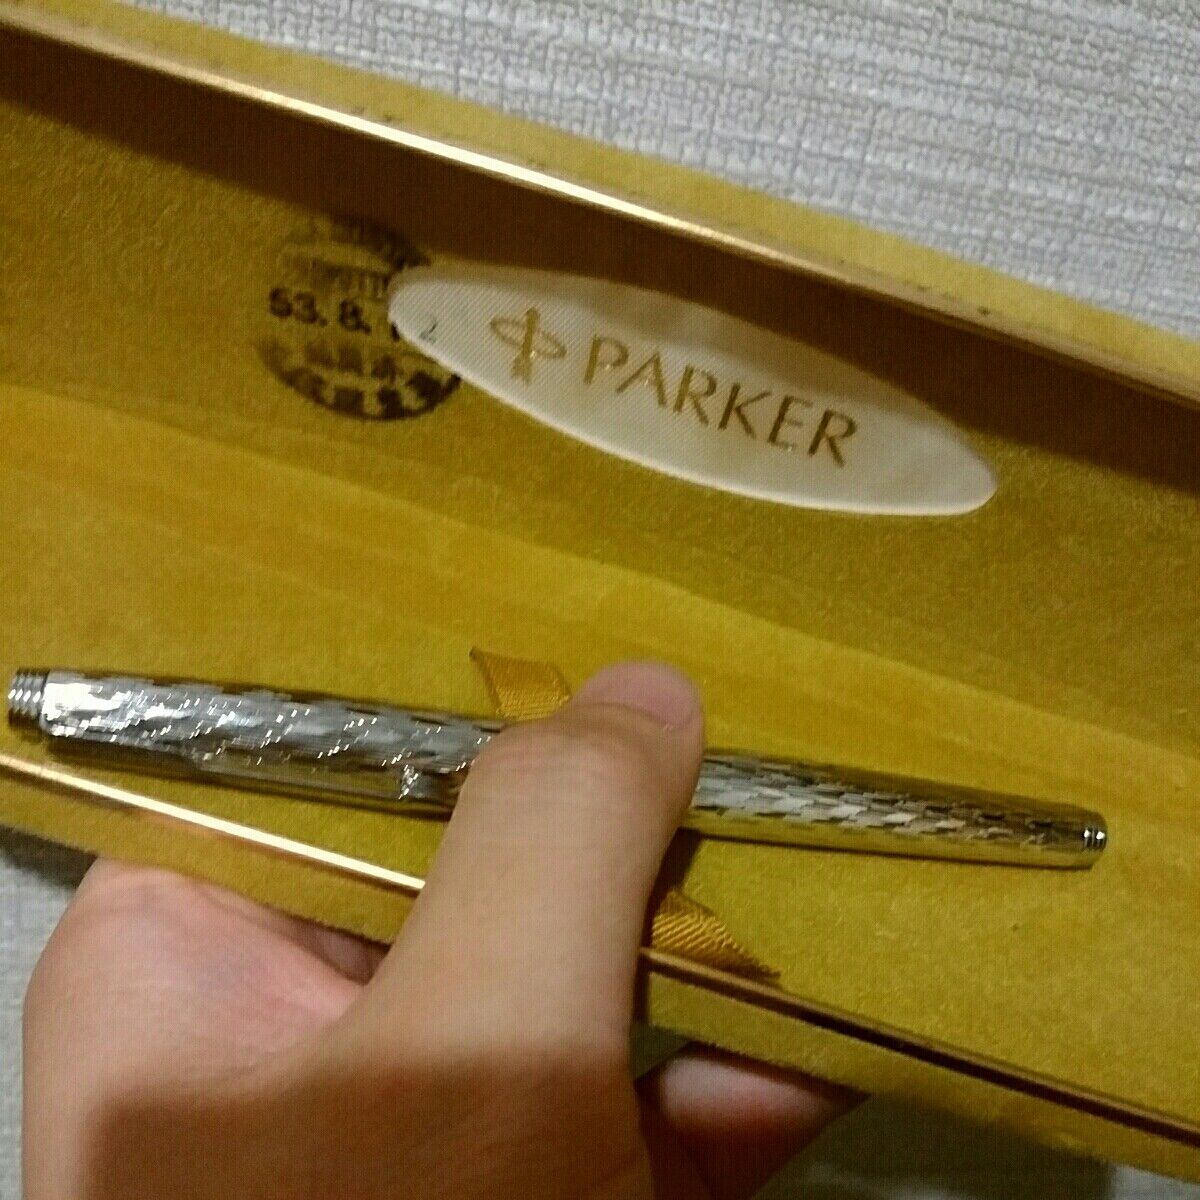 Parker 75 fountain pen